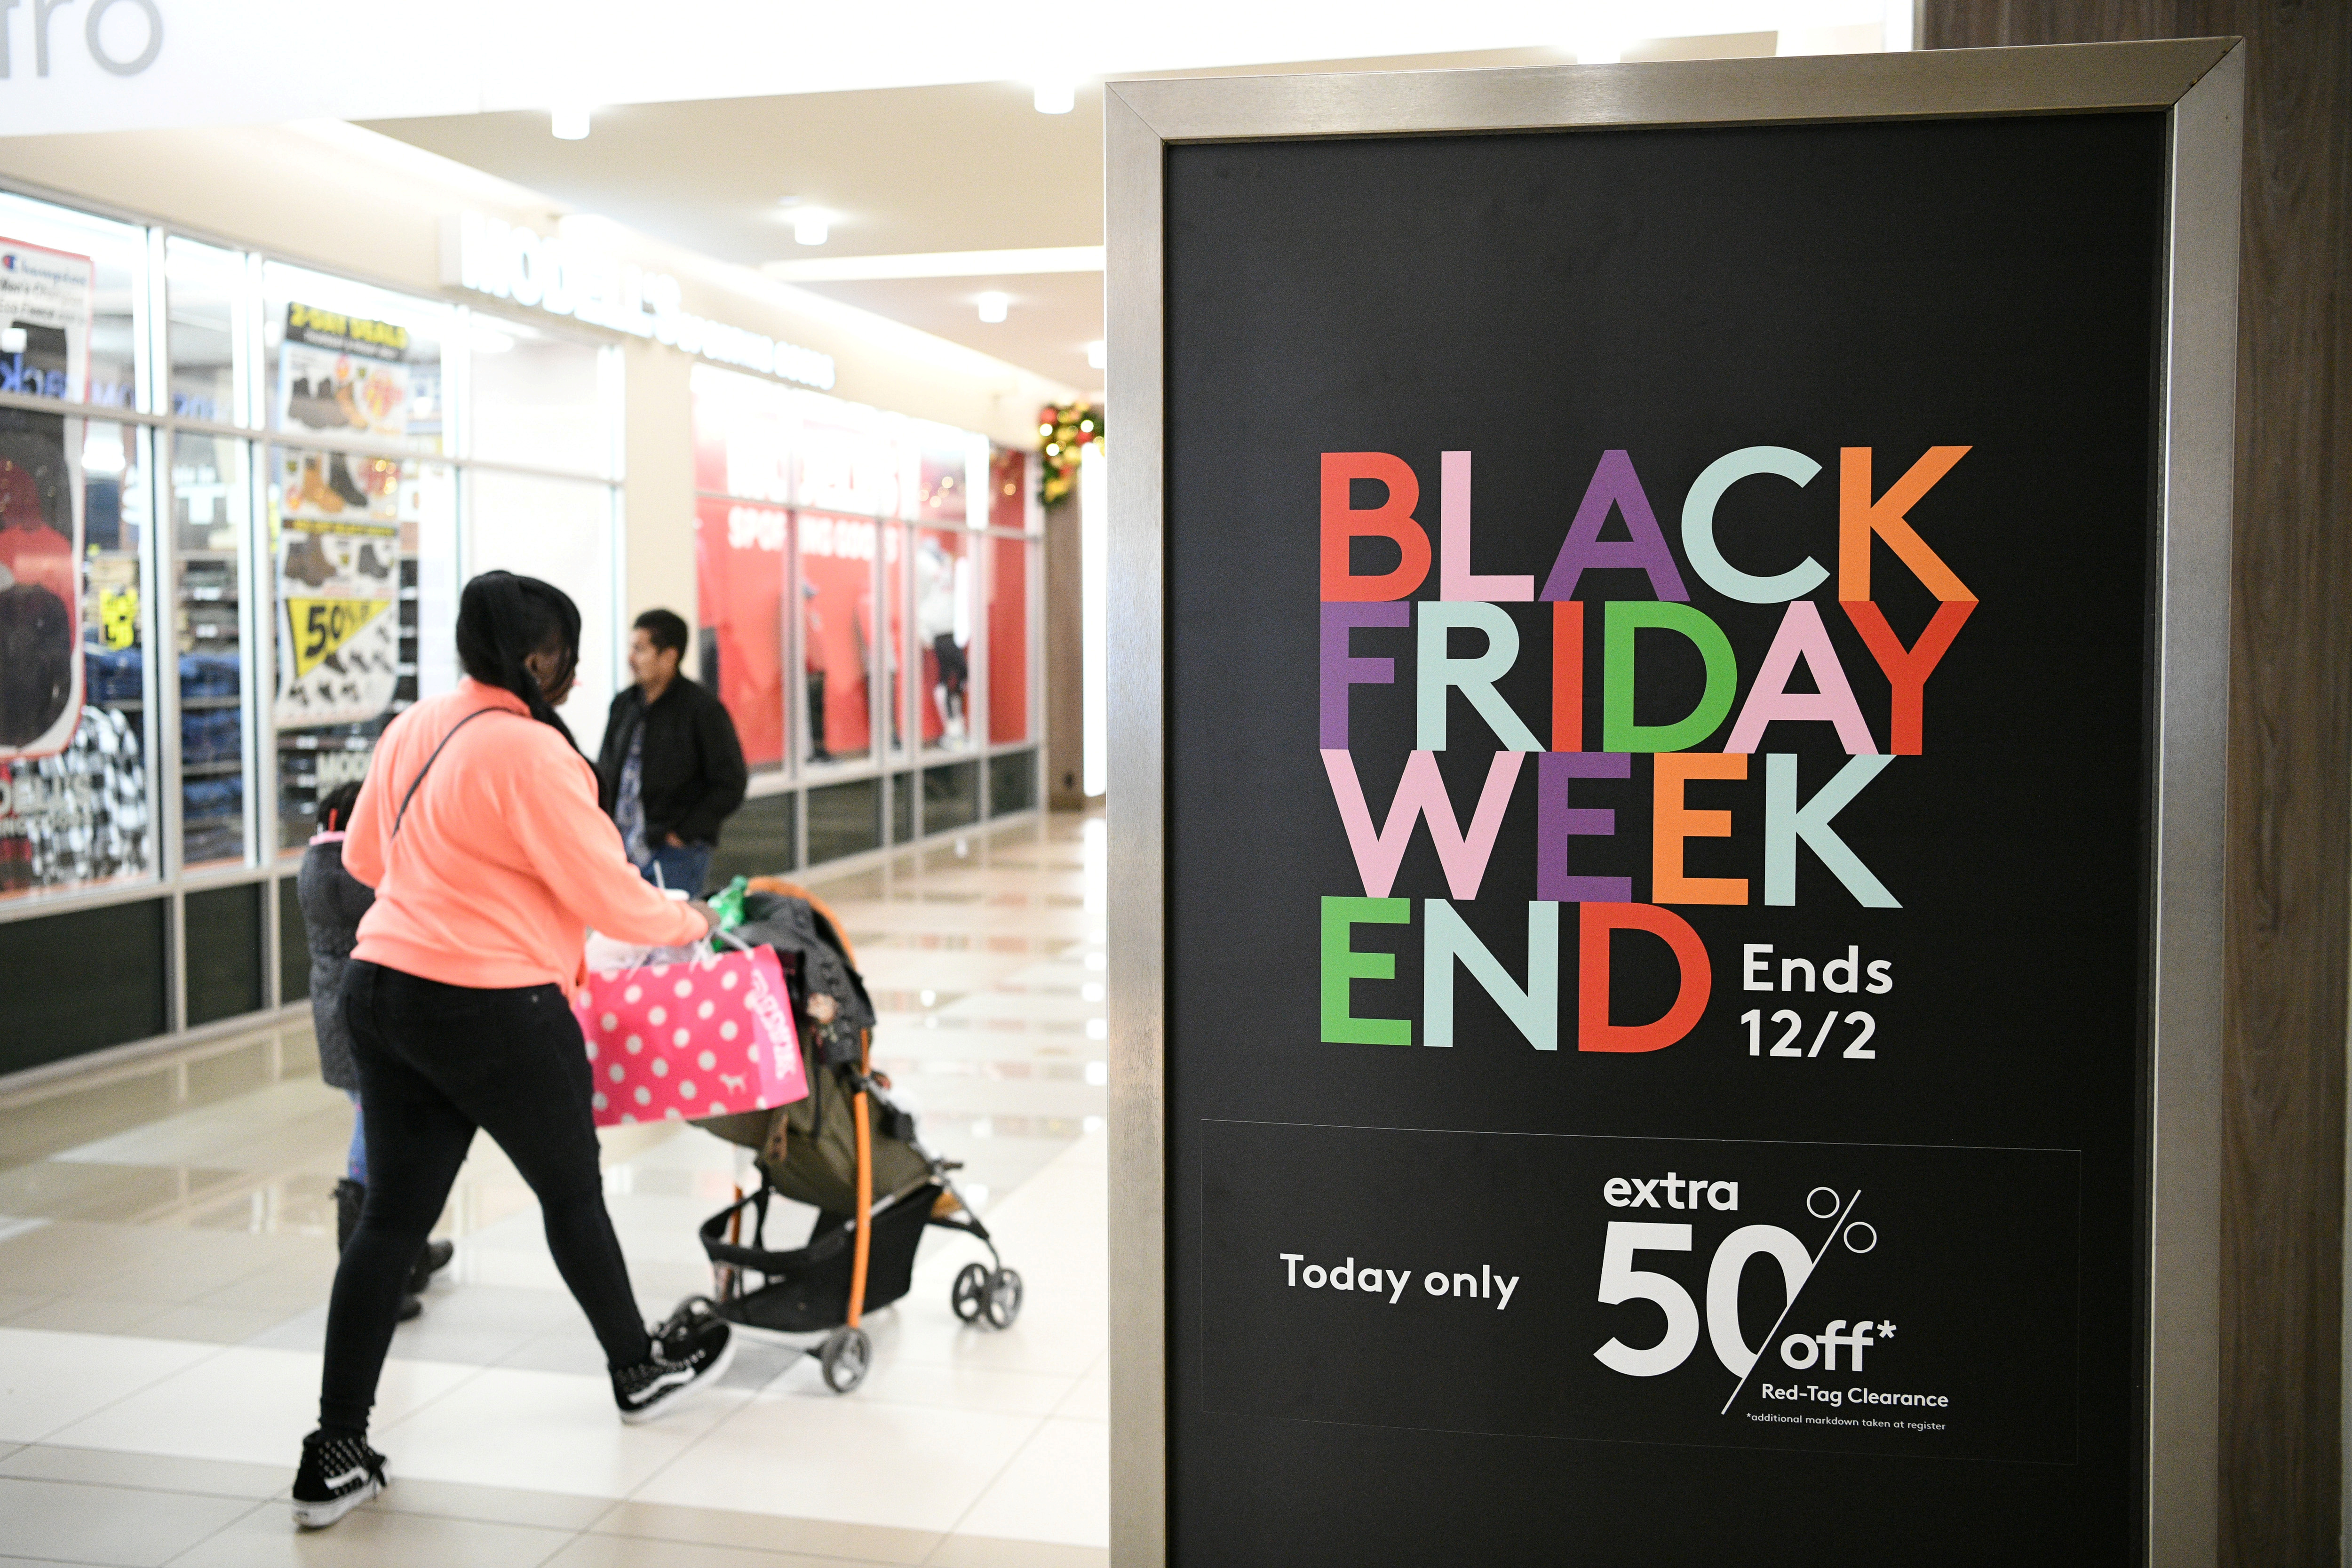 Tienda Inglesa - ¡Escondimos 🛒 entre nuestras ofertas de Black Friday!  ¿Cuántos encontraste? Mañana último día de Black Friday, ¡aprovechalo! 💥